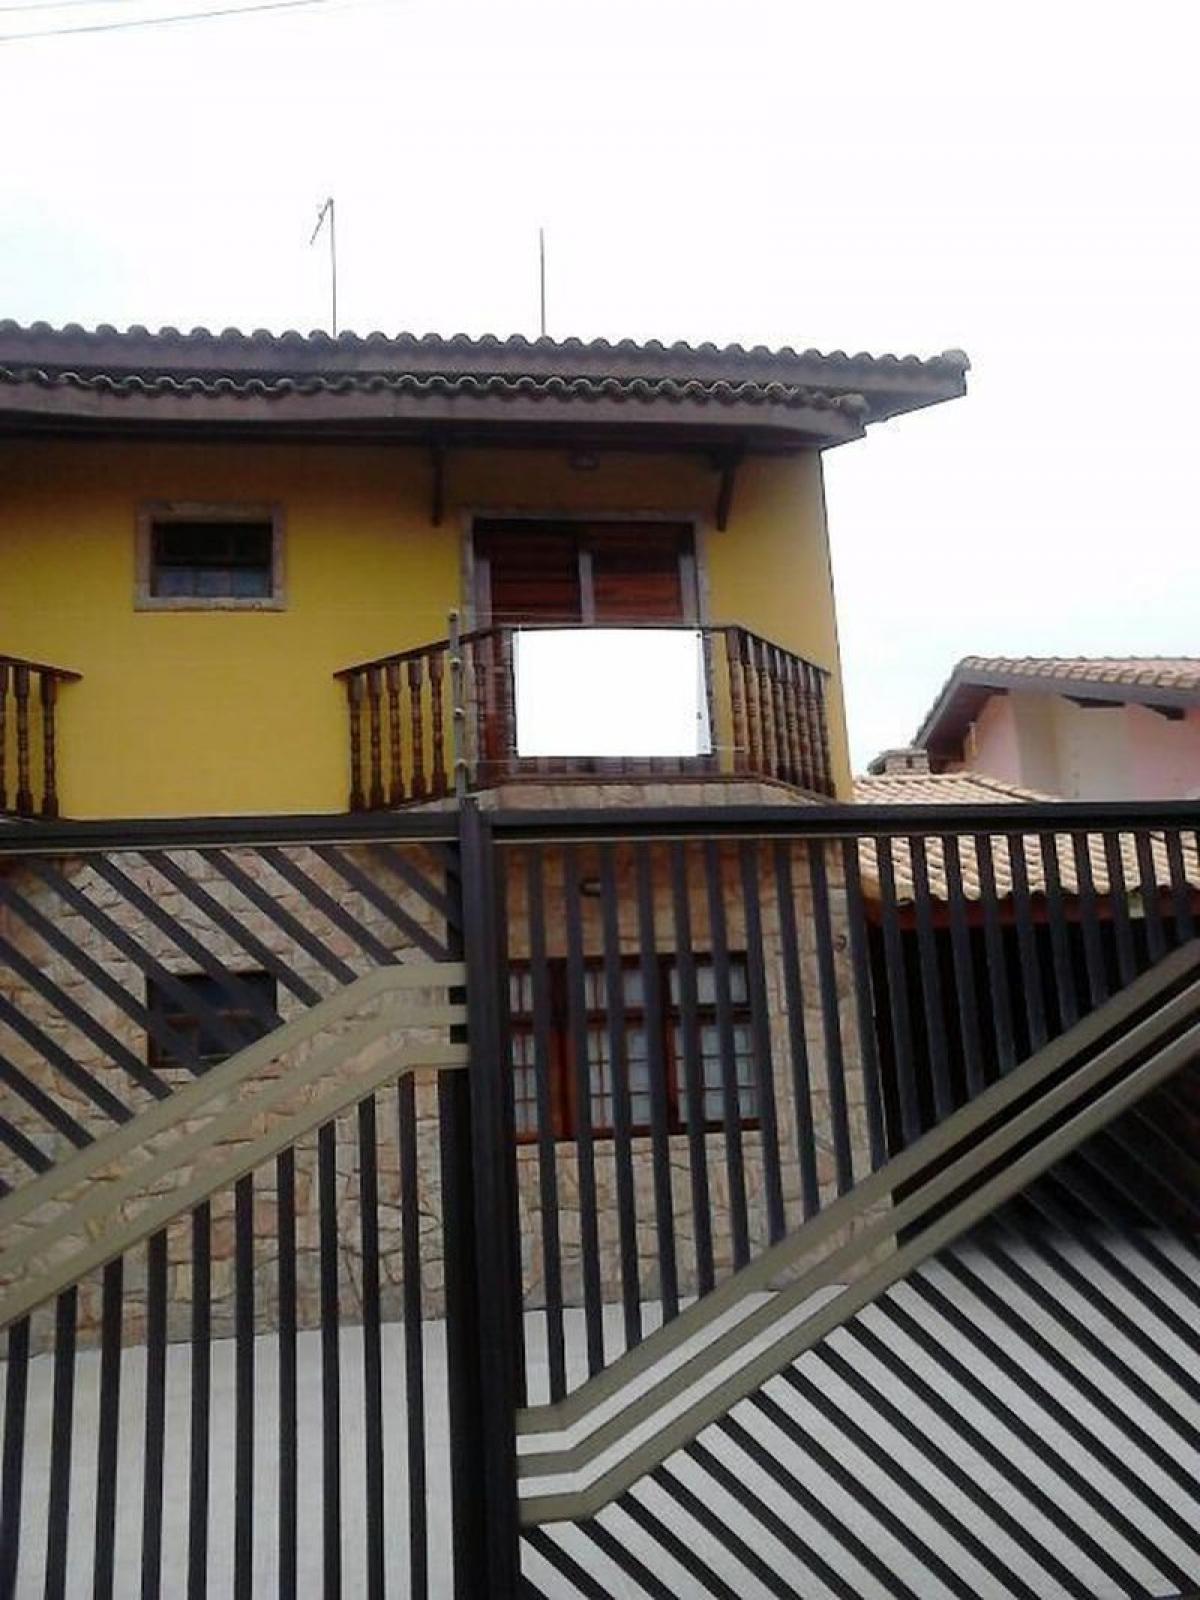 Picture of Home For Sale in Peruibe, Sao Paulo, Brazil